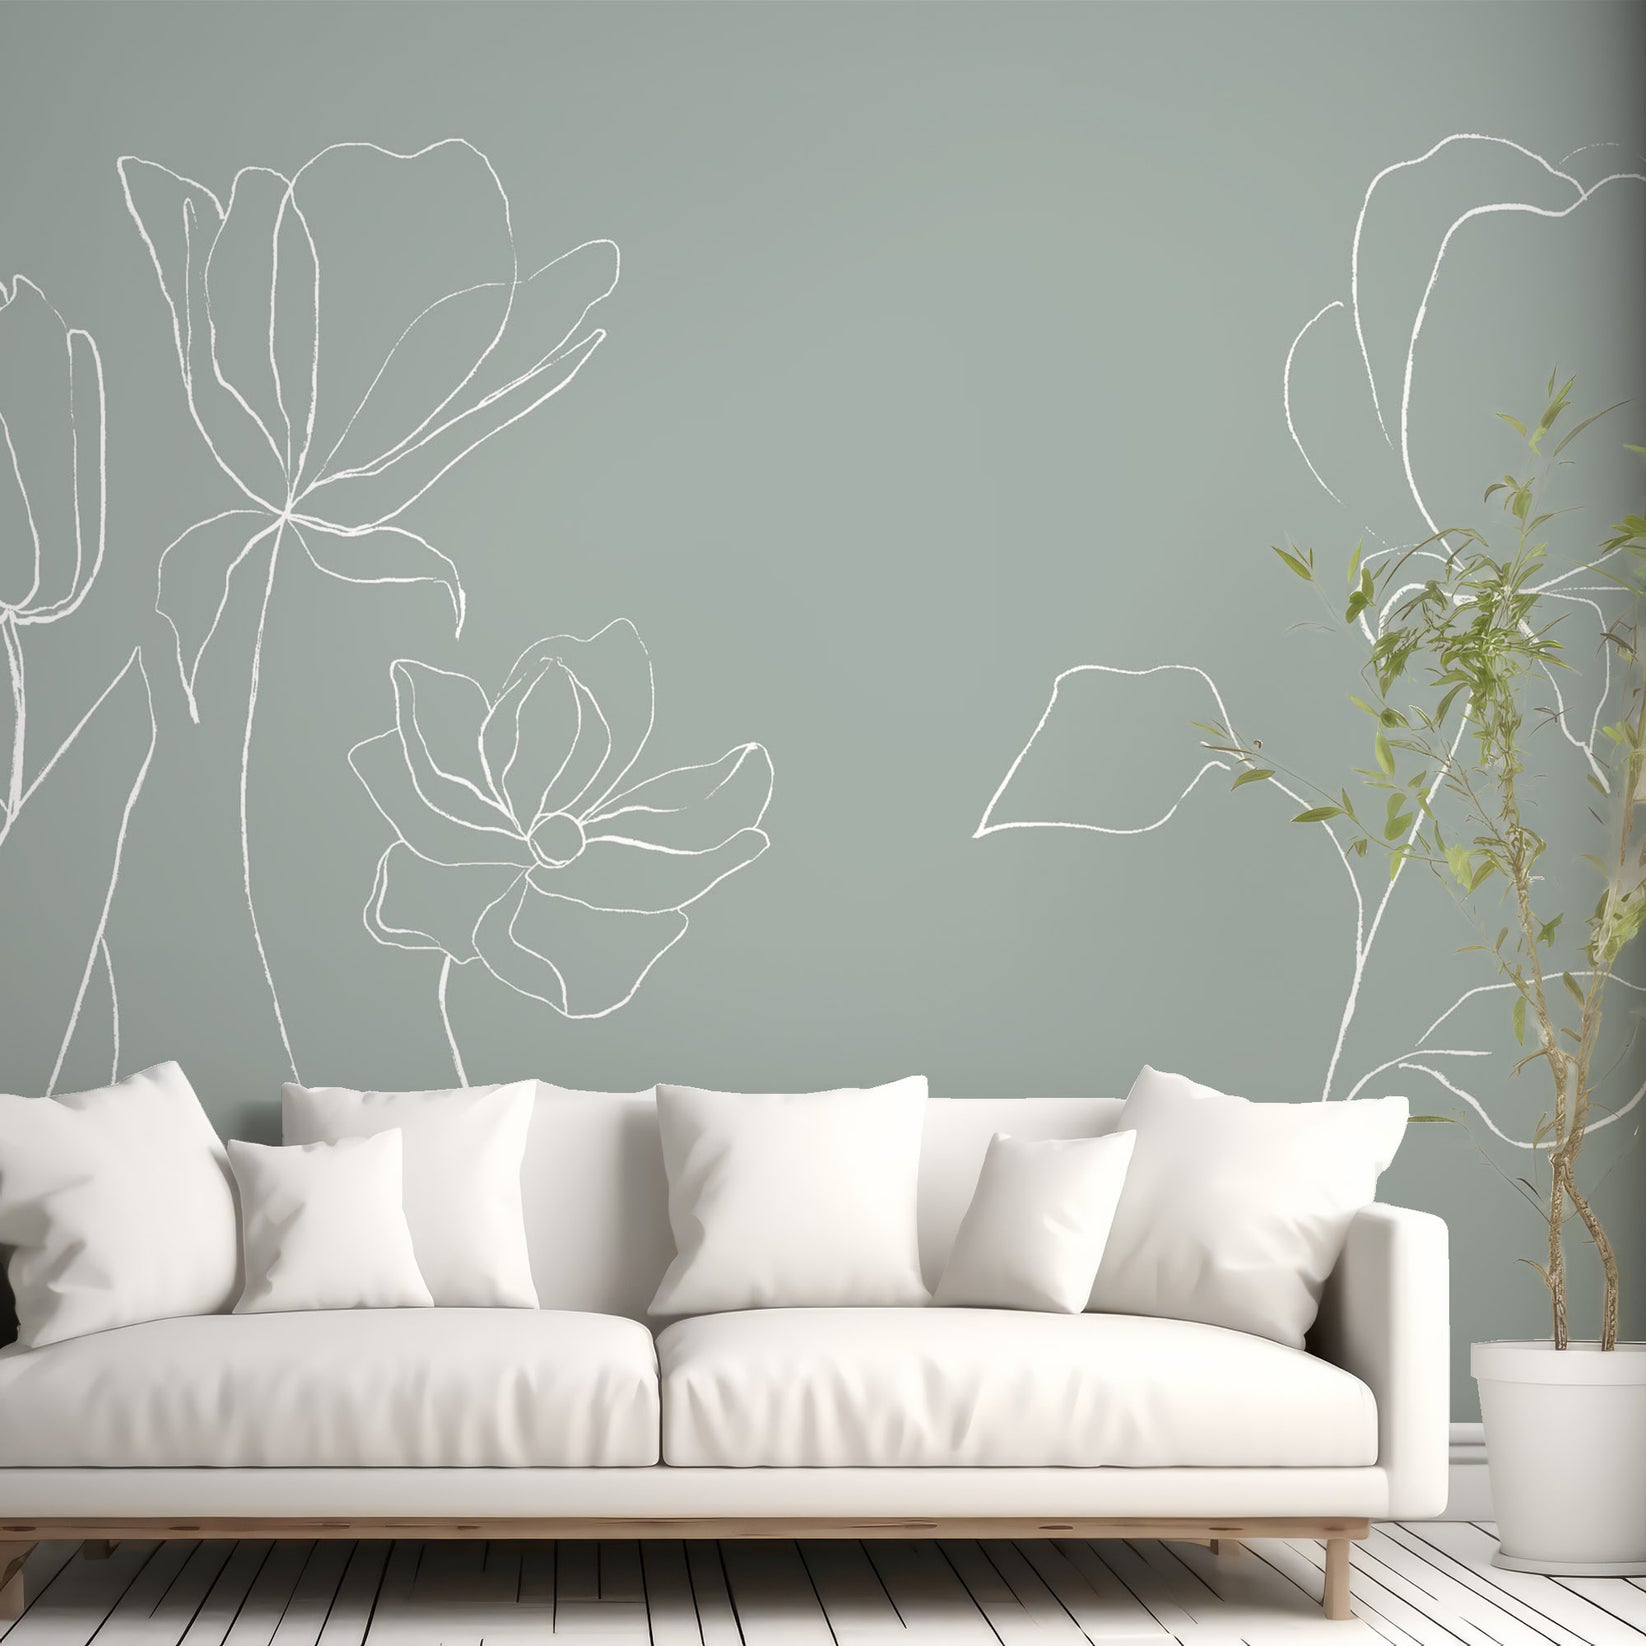 Papier peint à fleurs minimales dans le salon avec canapé blanc et plante verte dans un pot de plante blanc